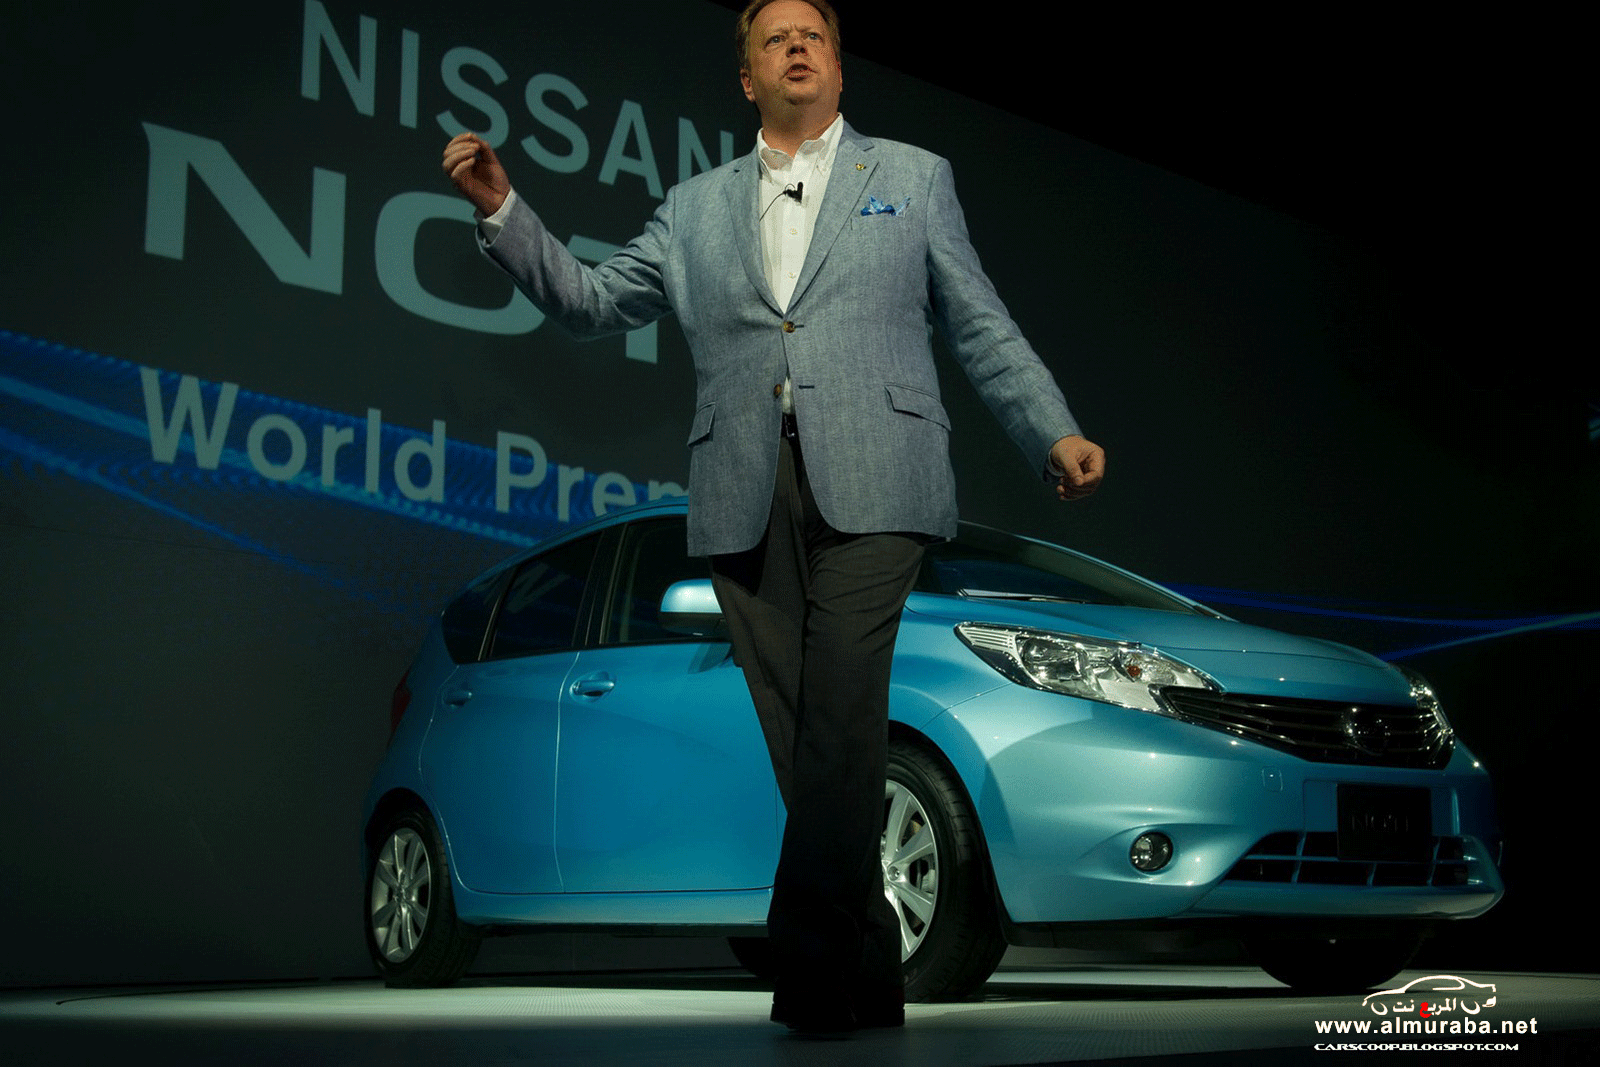 نيسان نوت 2013 الجديدة السيارة الاقتصادية صور واسعار ومواصفات Nissan Note 2013 5